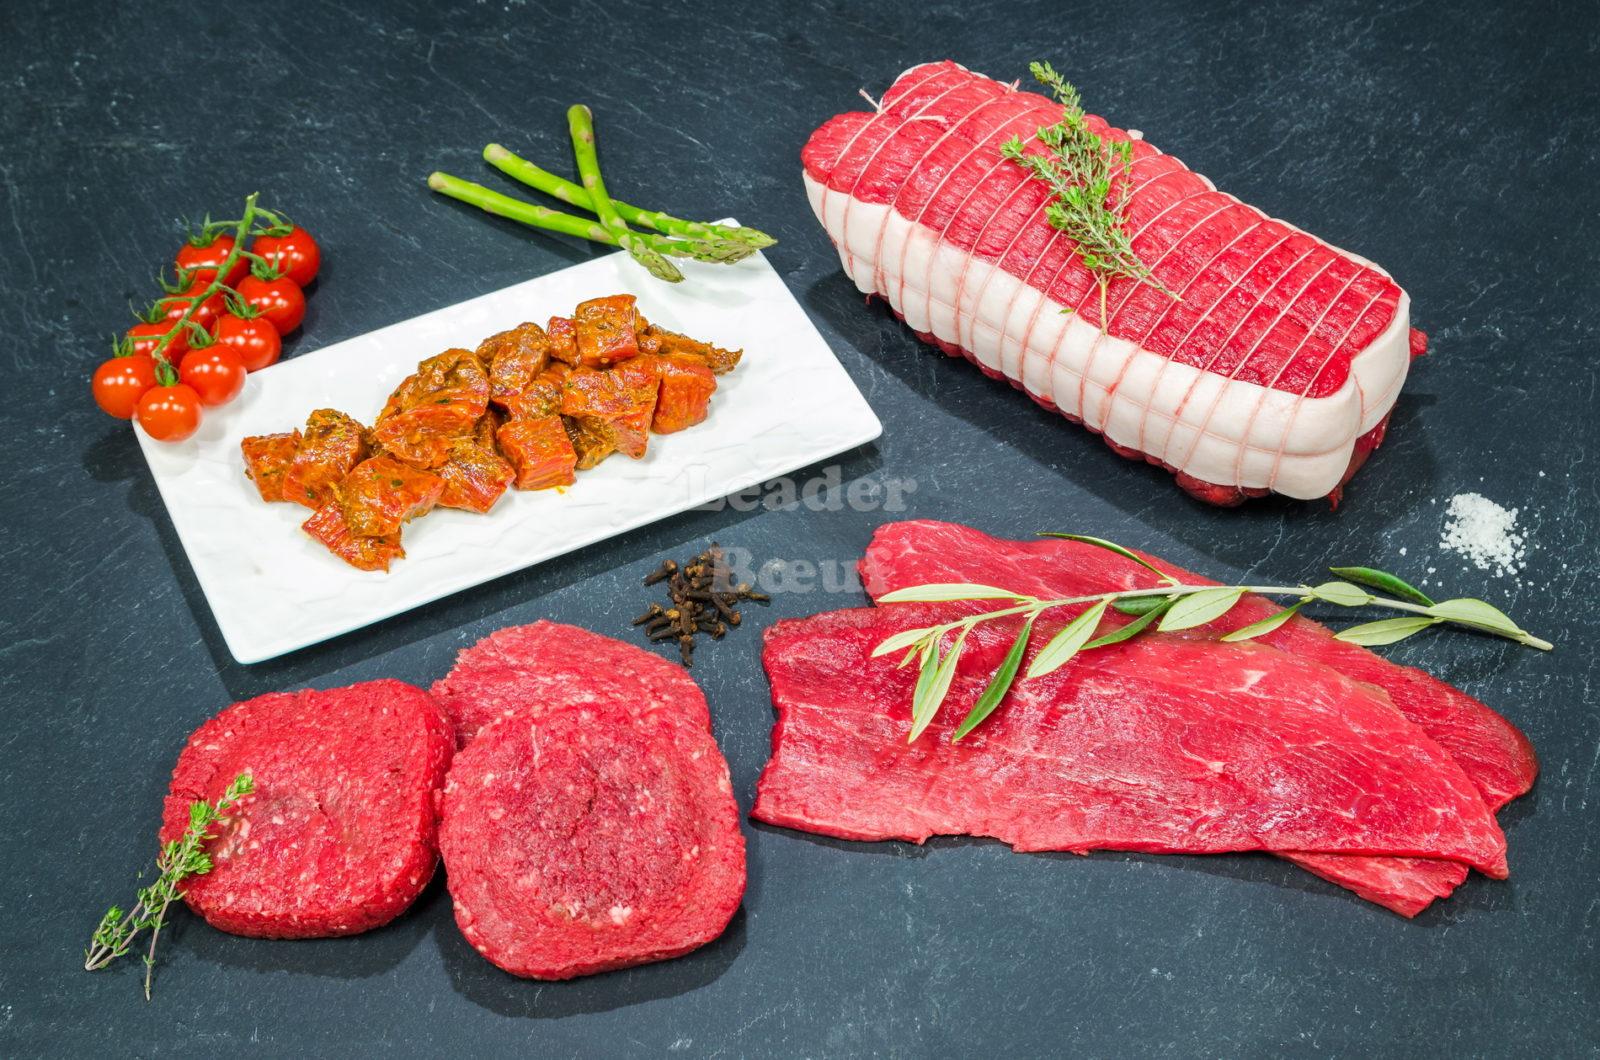 BIERE COREFF NOEL 75CL COREFF : Vente directe viande Finistère : bœuf  charolais, viande de boucherie – Le Bœuf s'emporte